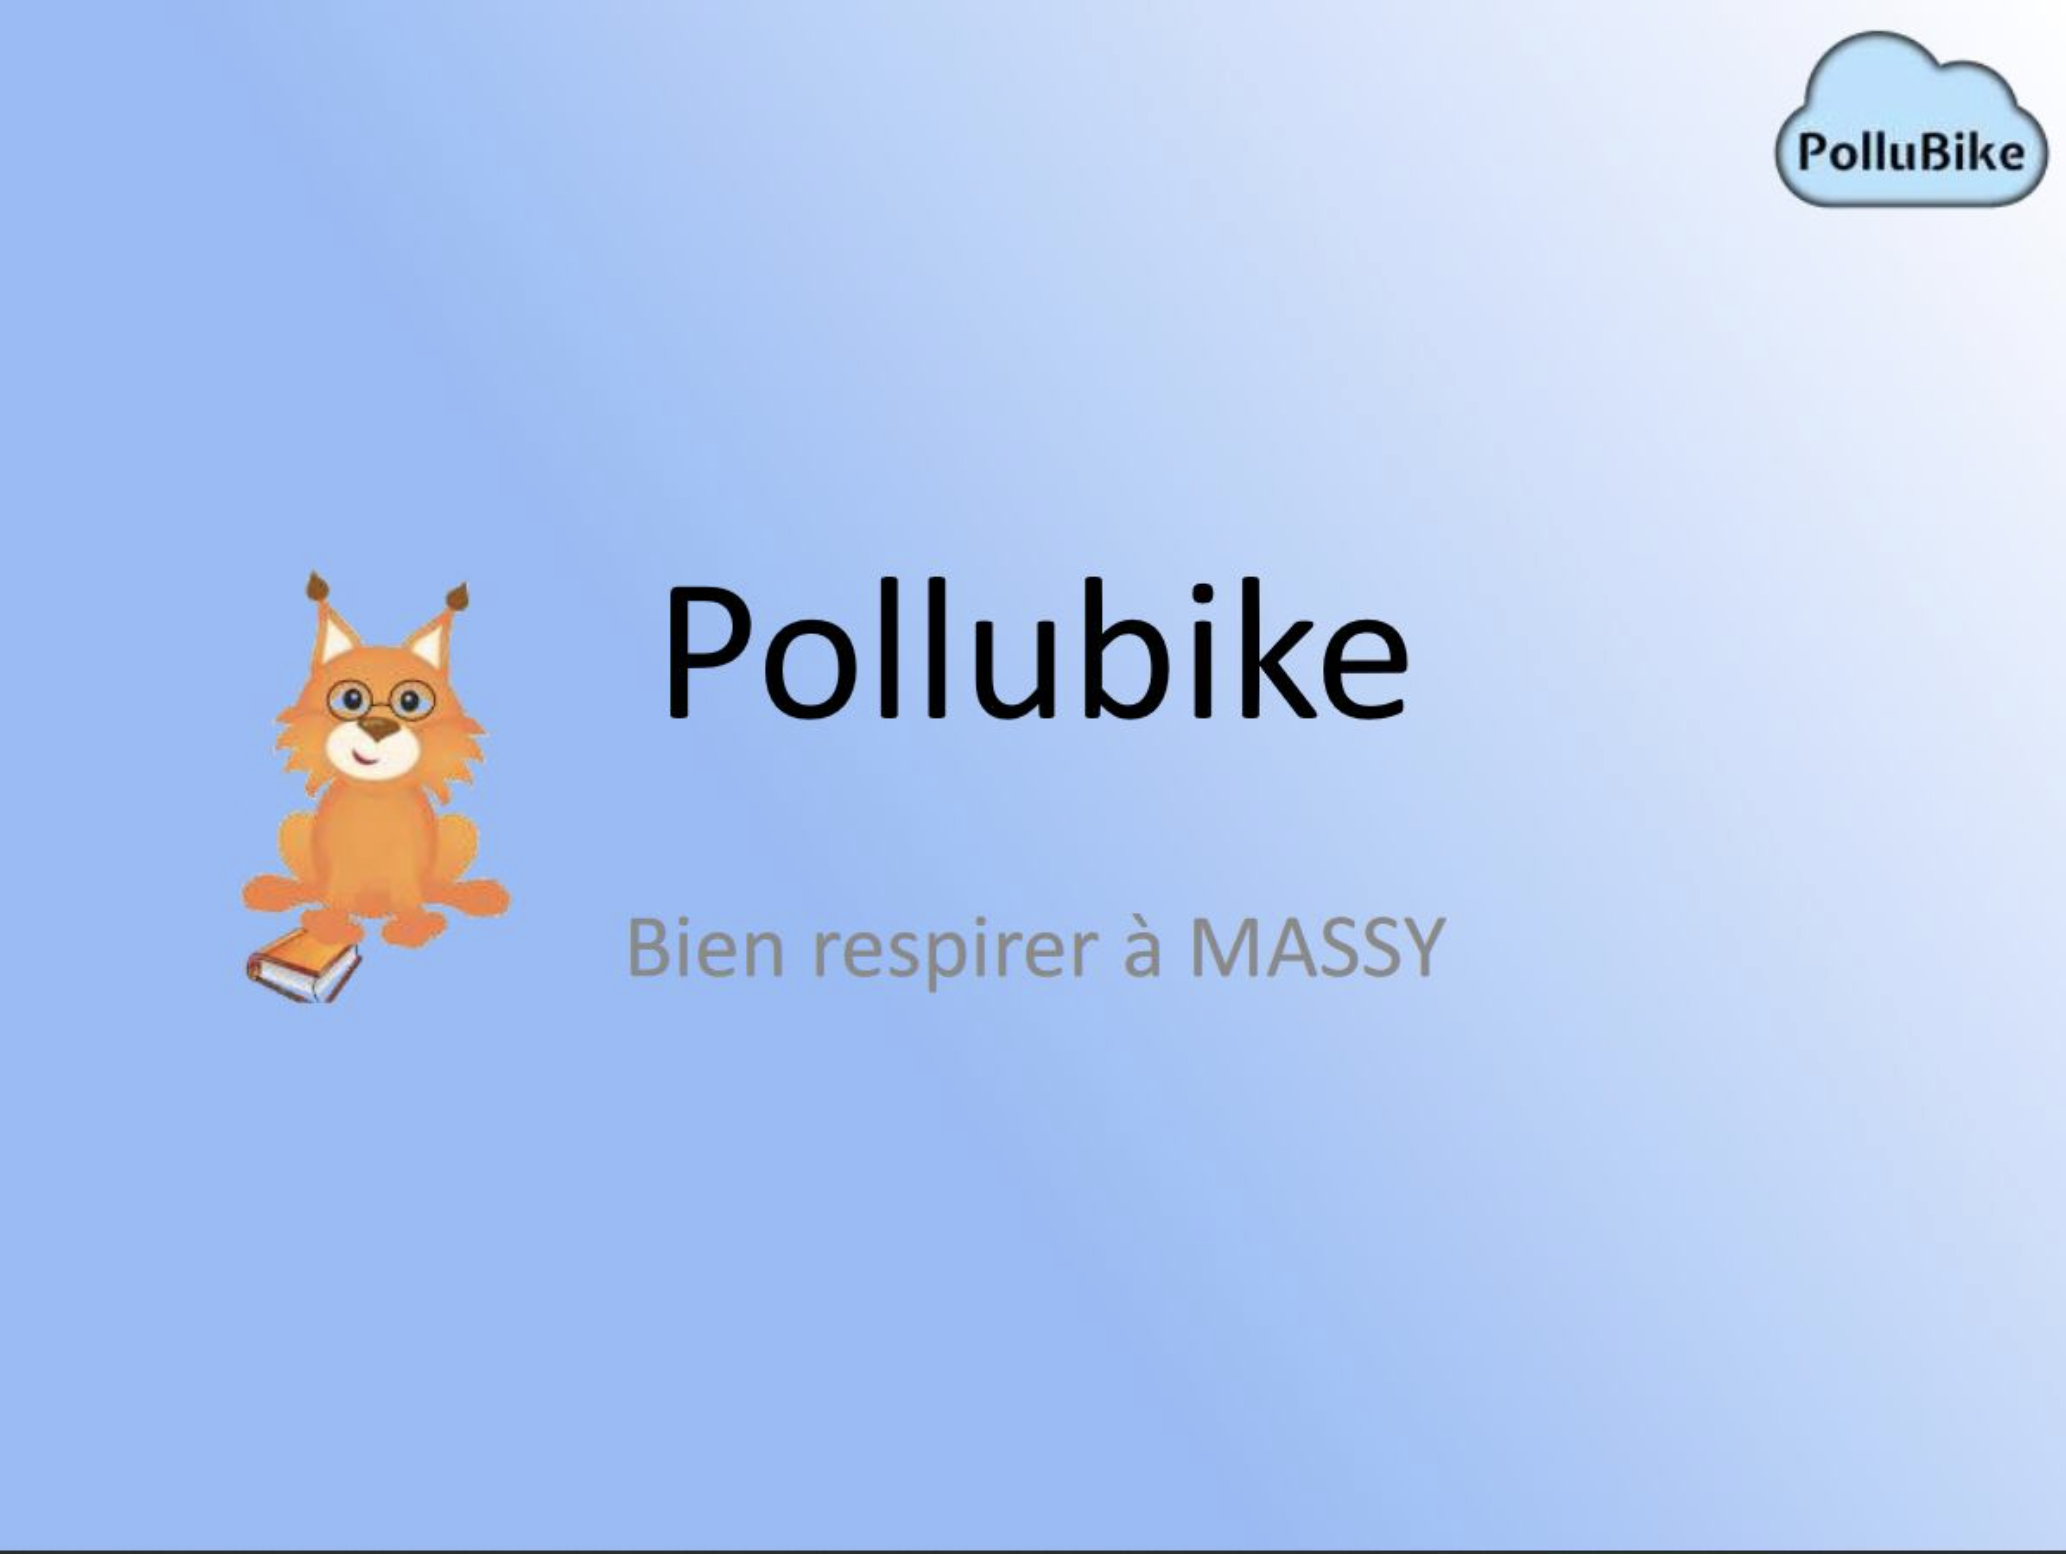 PolluBike